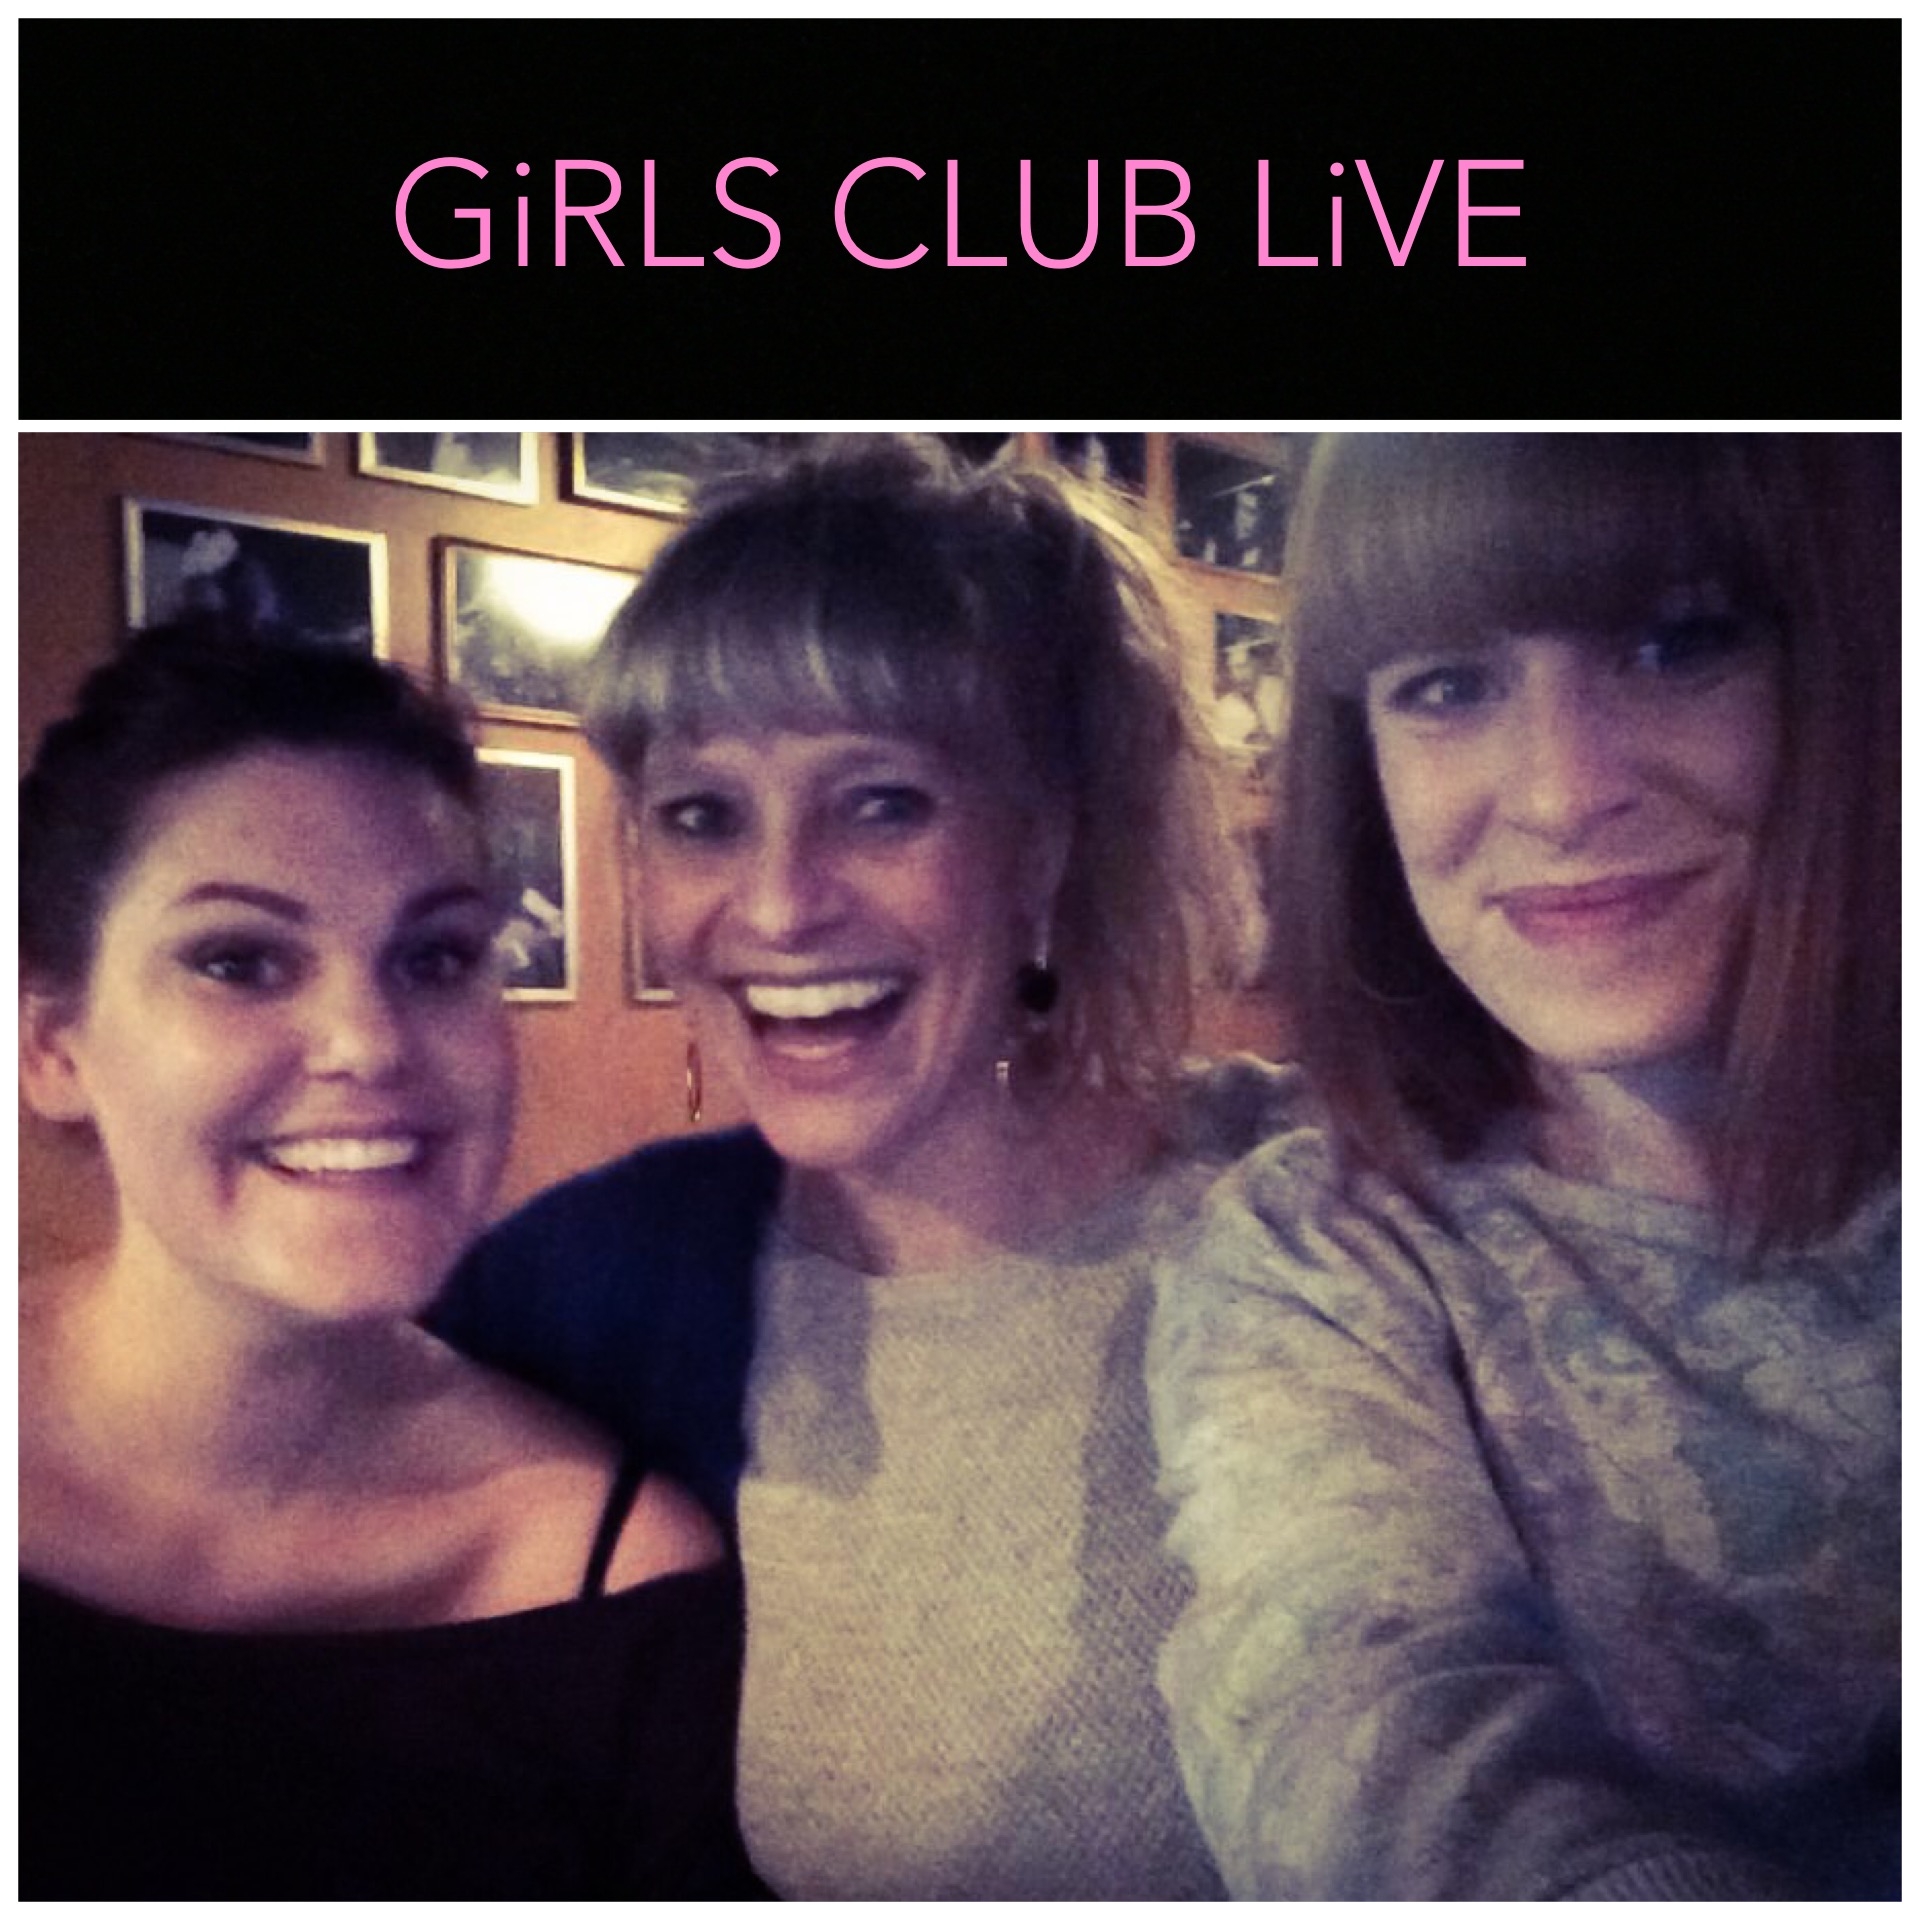 AFLYST

Girls Club